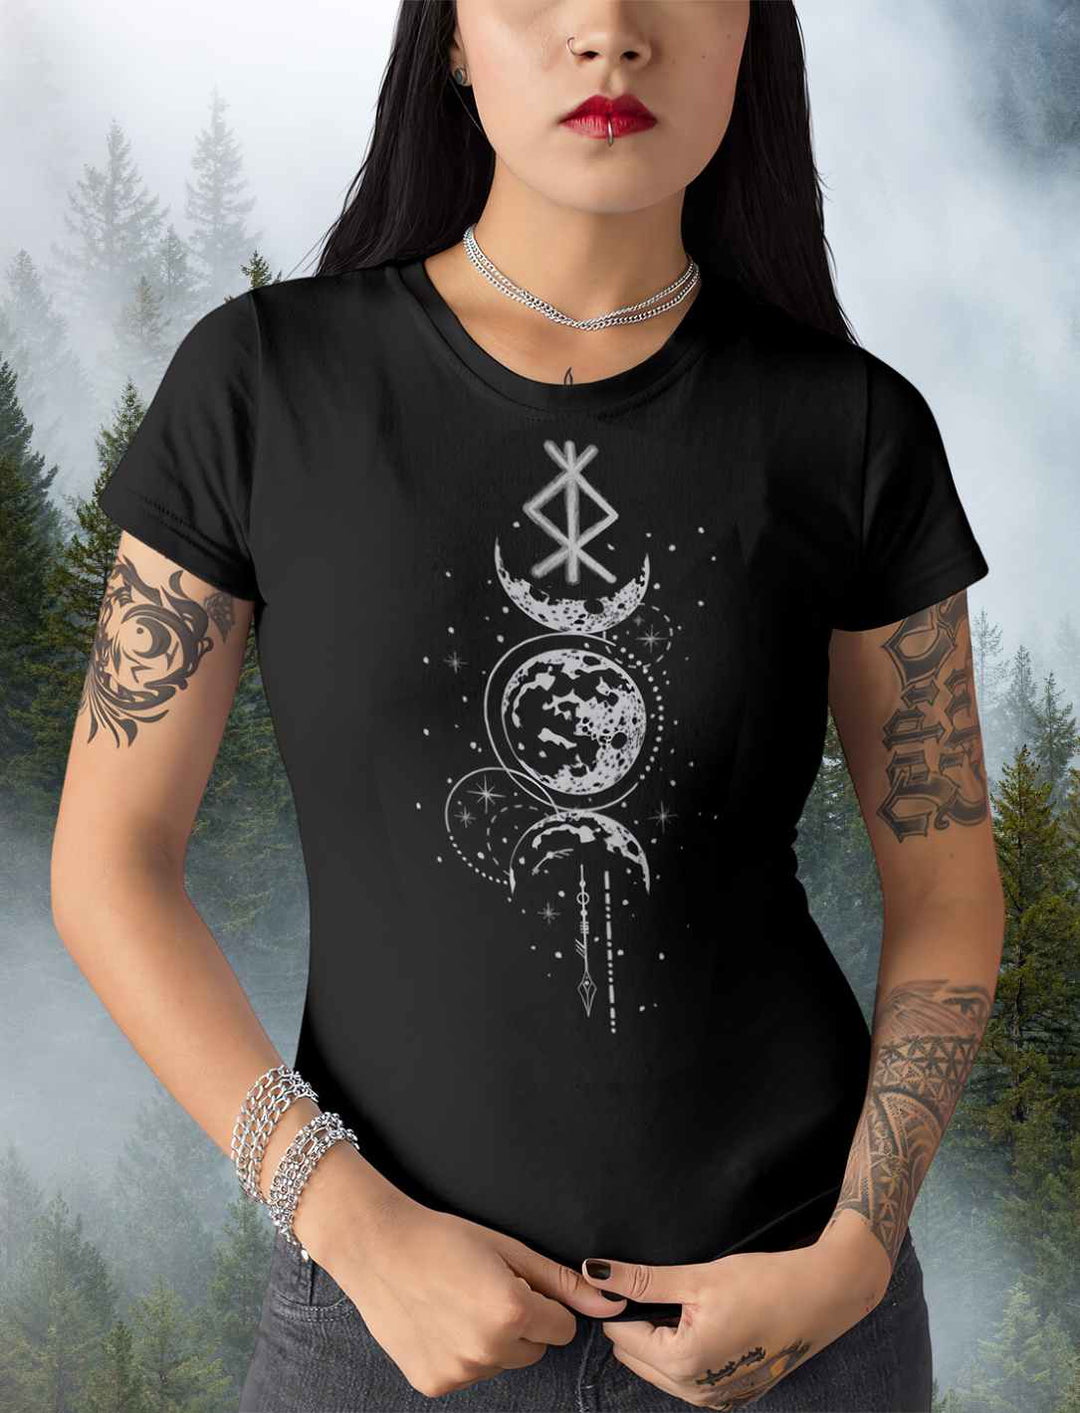 Dunkelhaarige Frau trägt Rune des Mondschein Wächters Damen T-Shirt in schwarz.